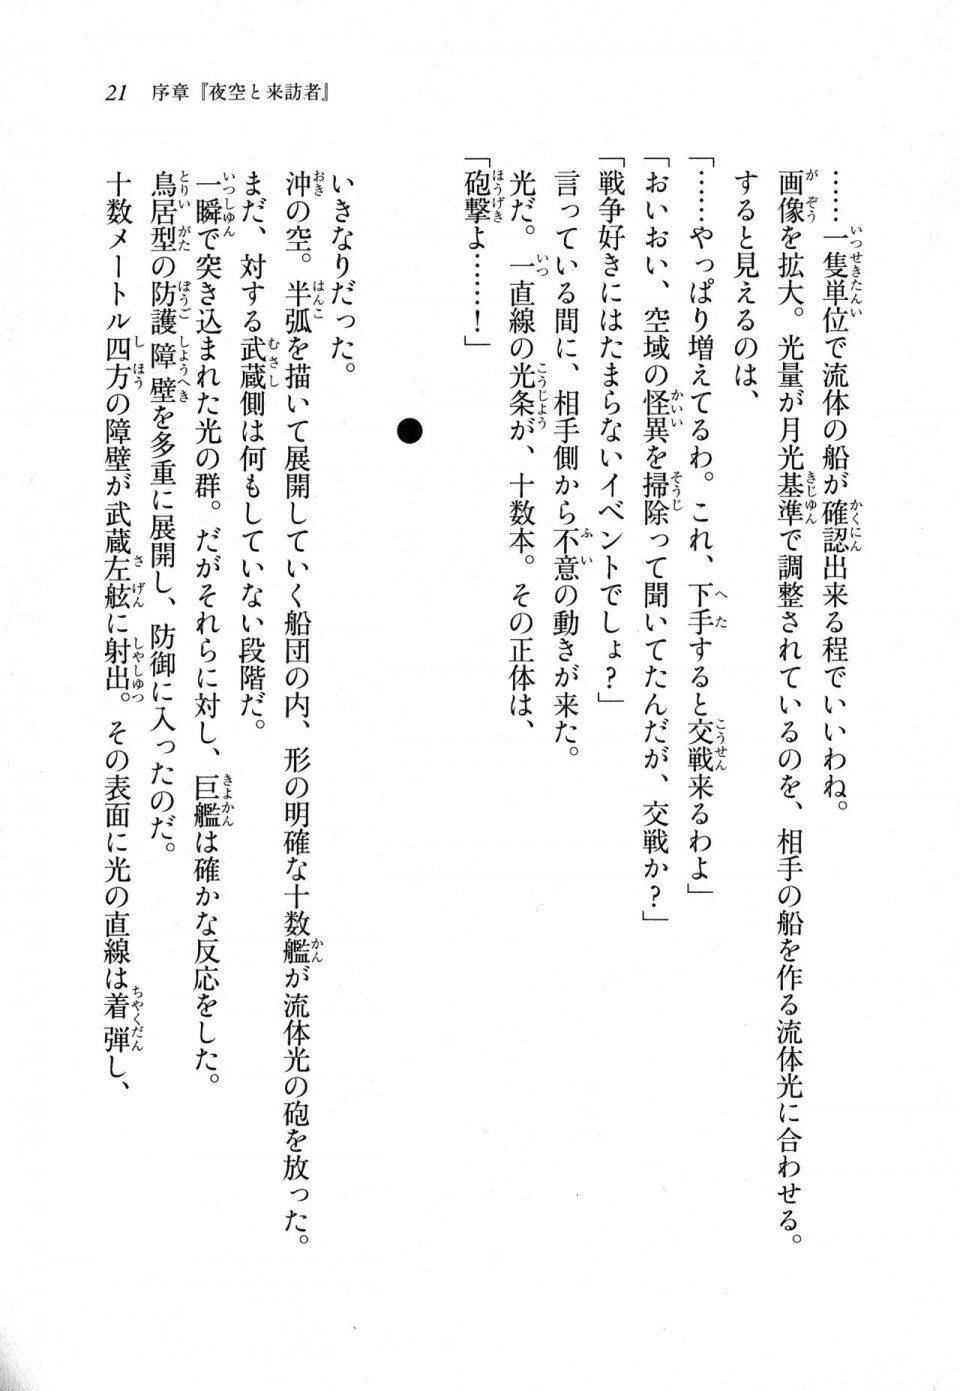 Kyoukai Senjou no Horizon LN Sidestory Vol 1 - Photo #20